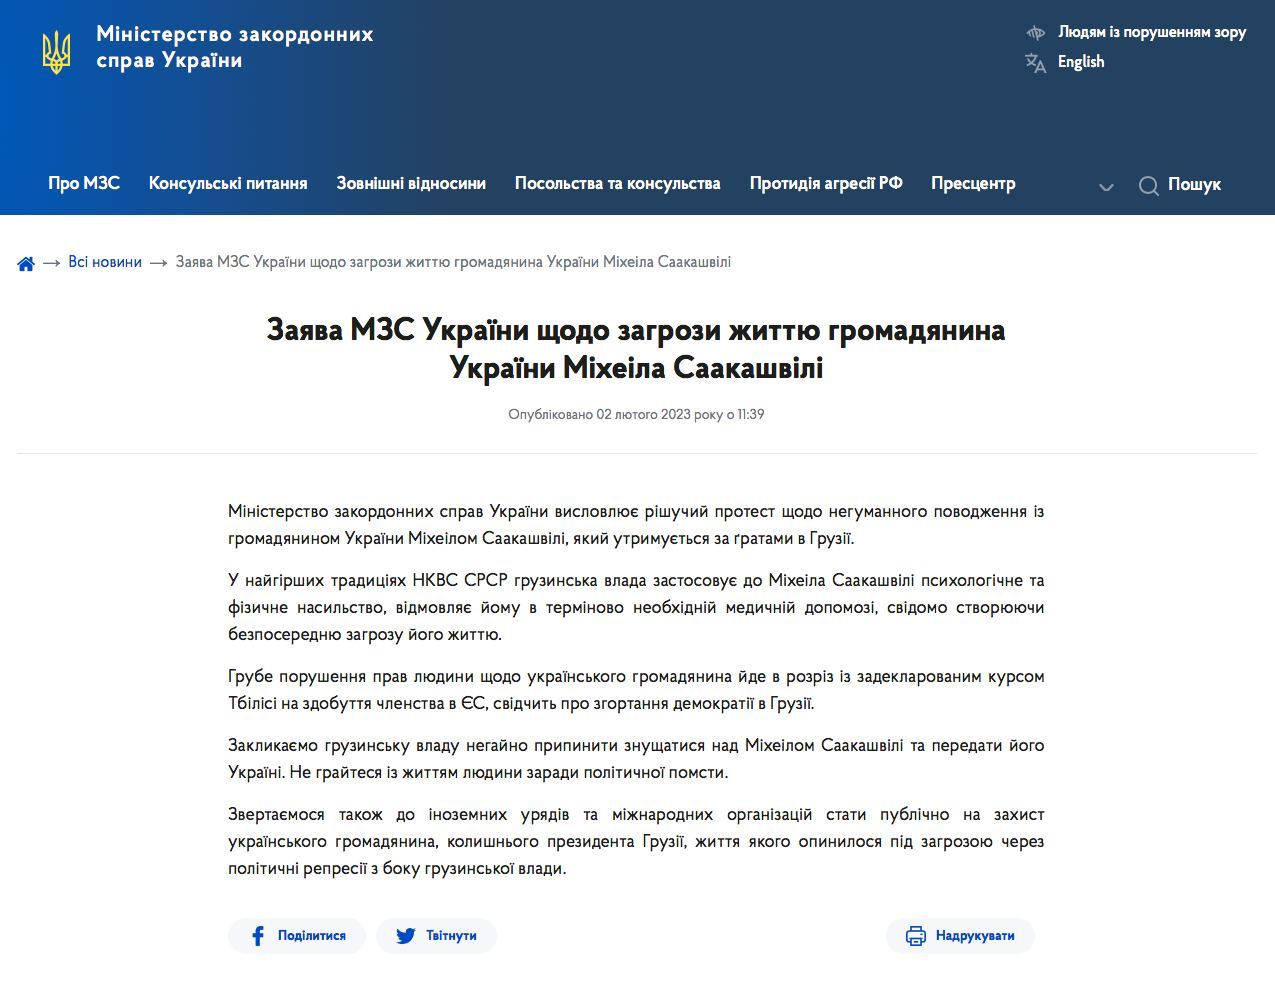 Украинский МИД выразил решительный протест относительно негуманного обращения с гражданином Украины Михеилом Саакашвили